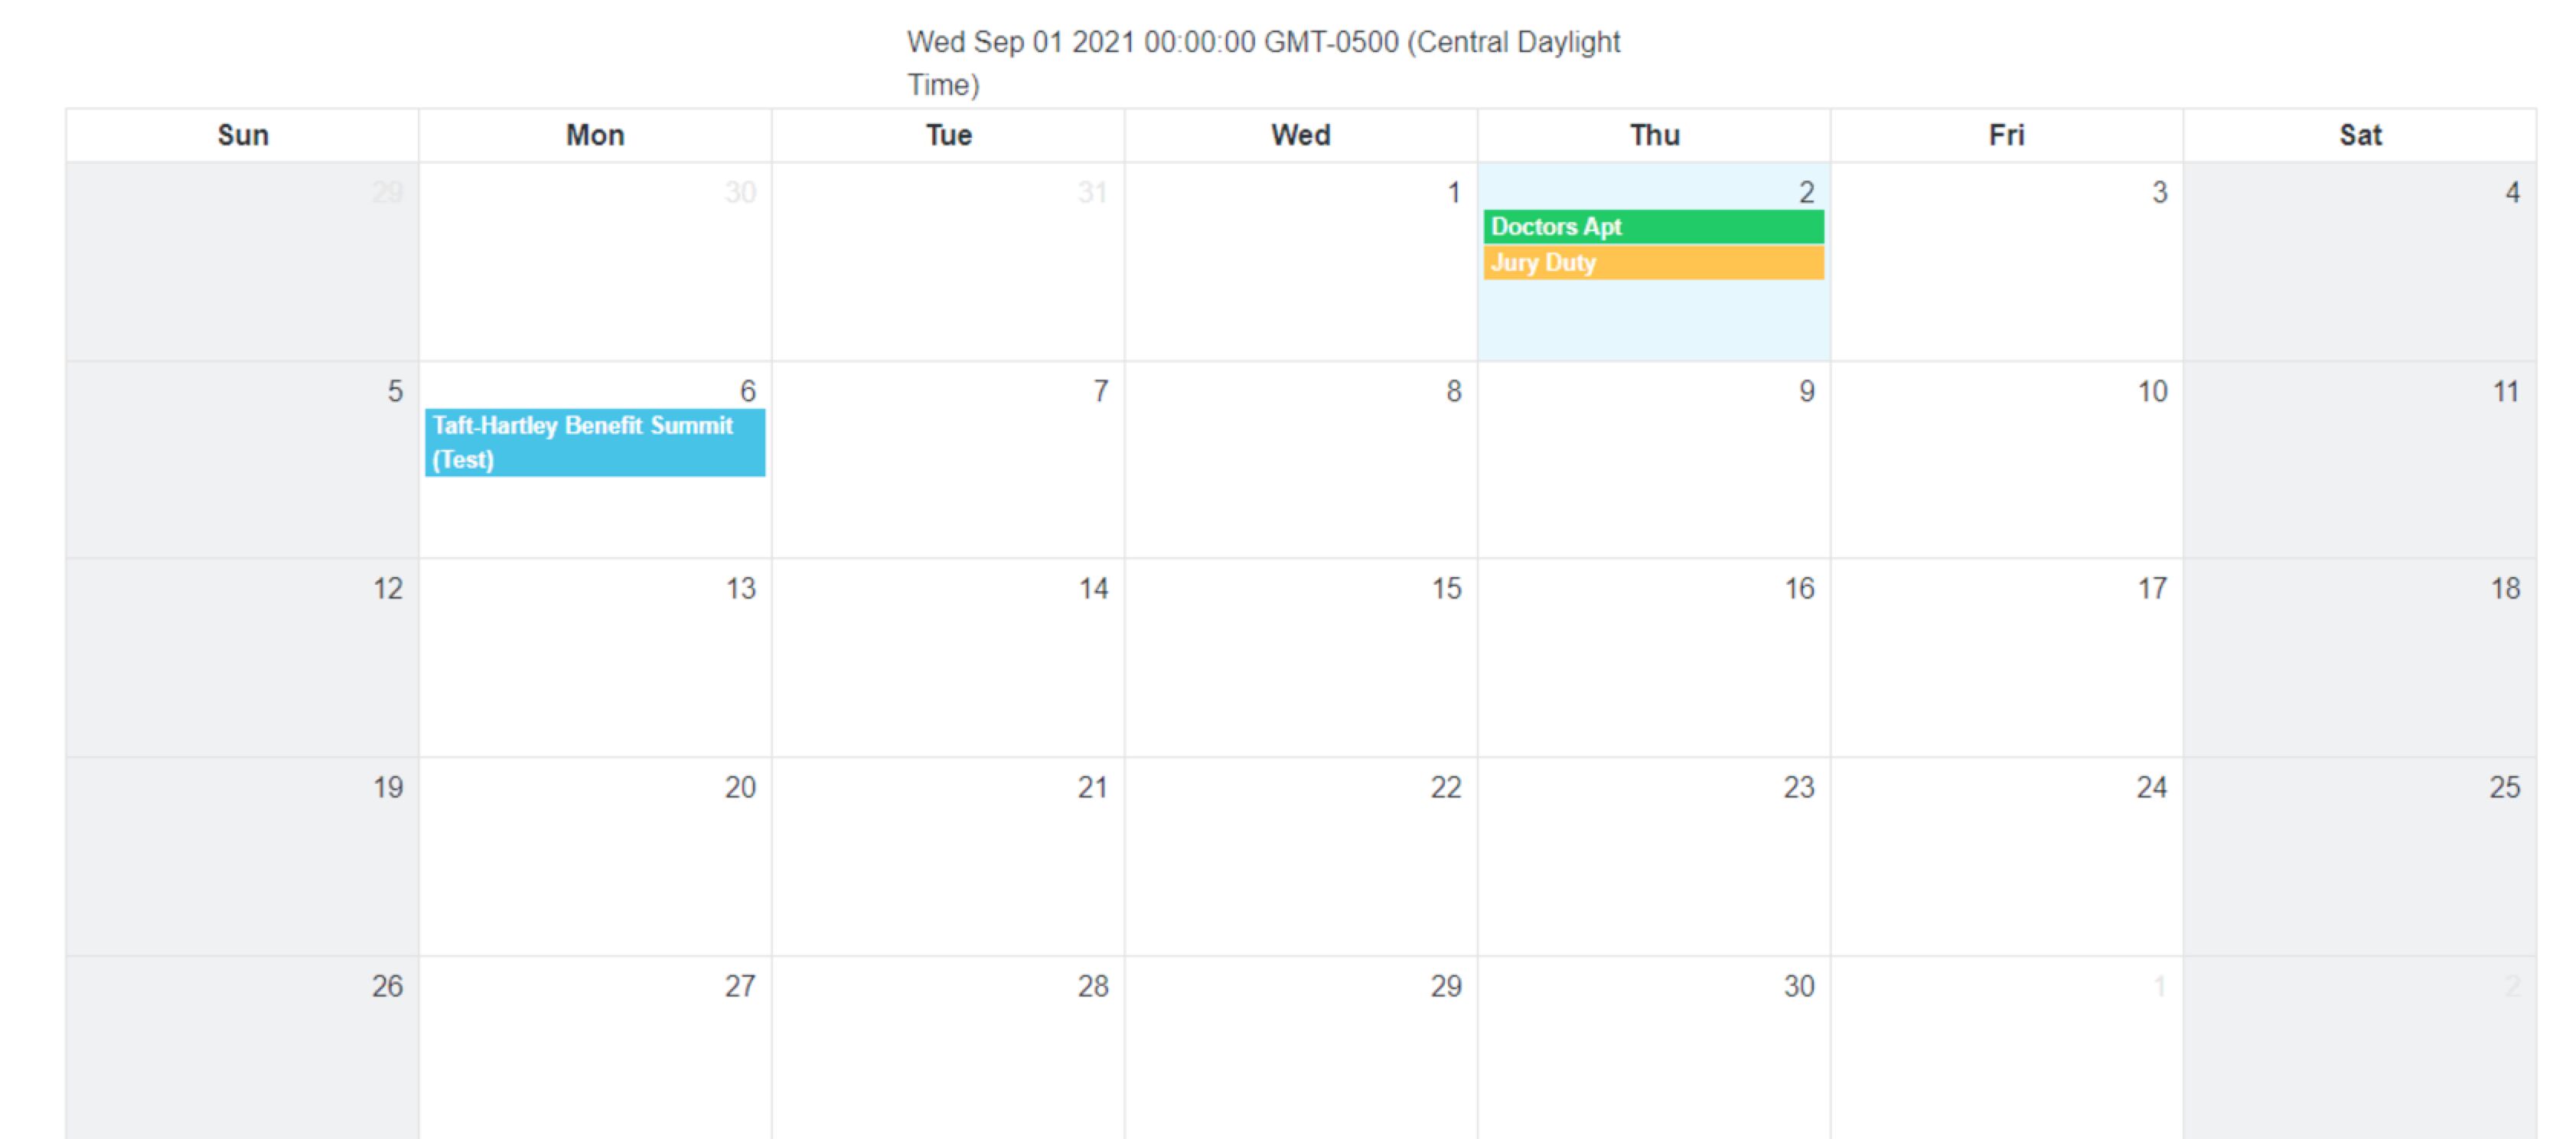 initial load calendar.startDate = September 1